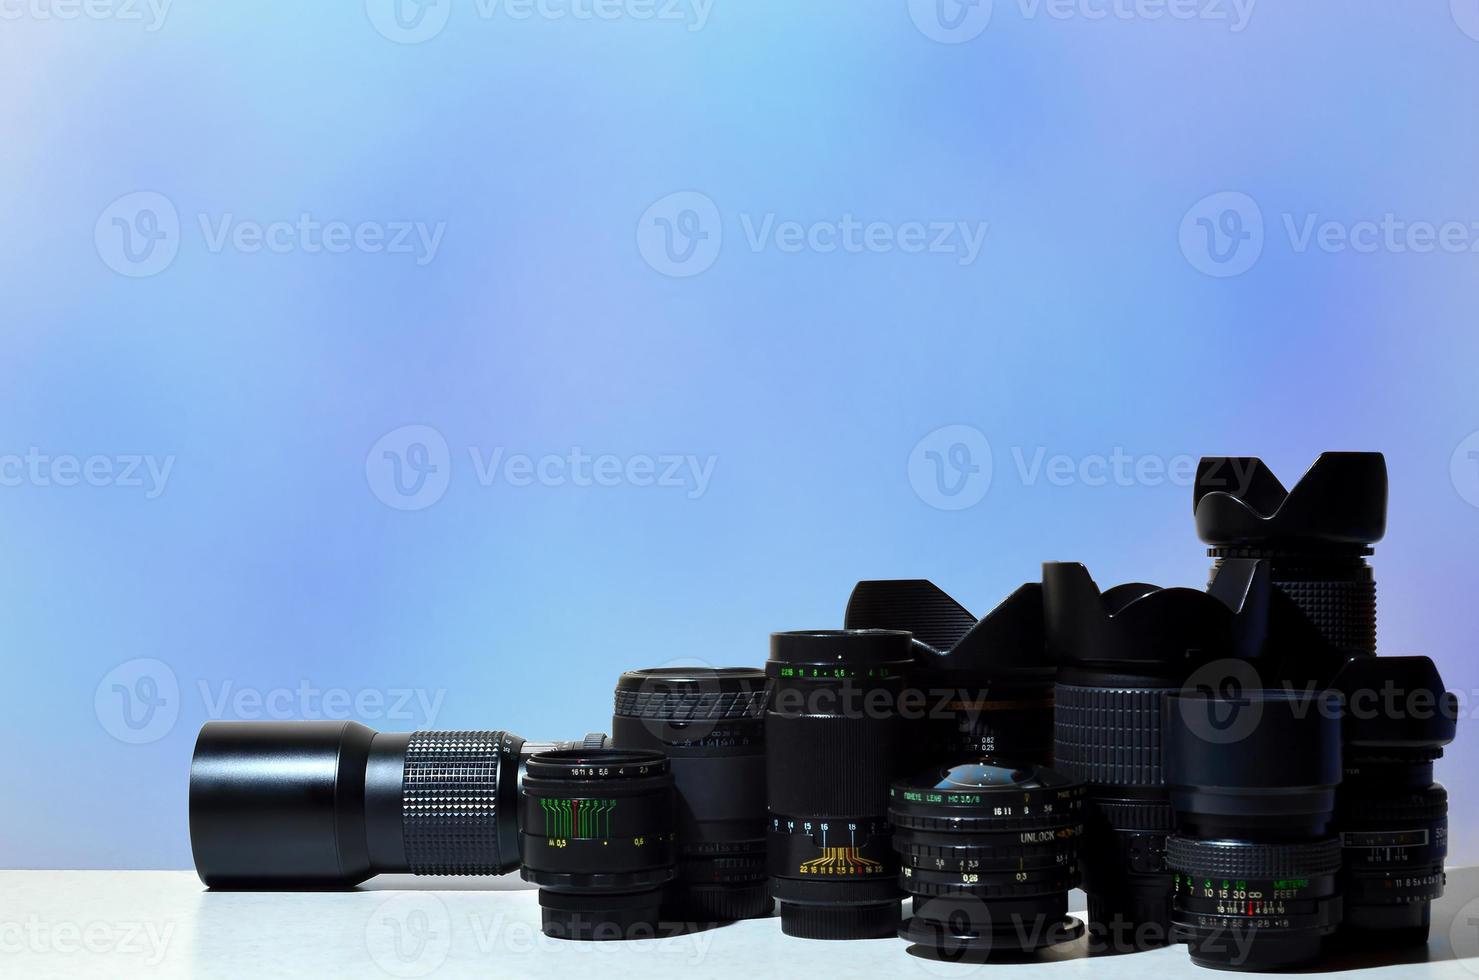 Viele verschiedene professionelle Objektive für Spiegelreflexkameras liegen auf einem farblosen Schreibtisch foto